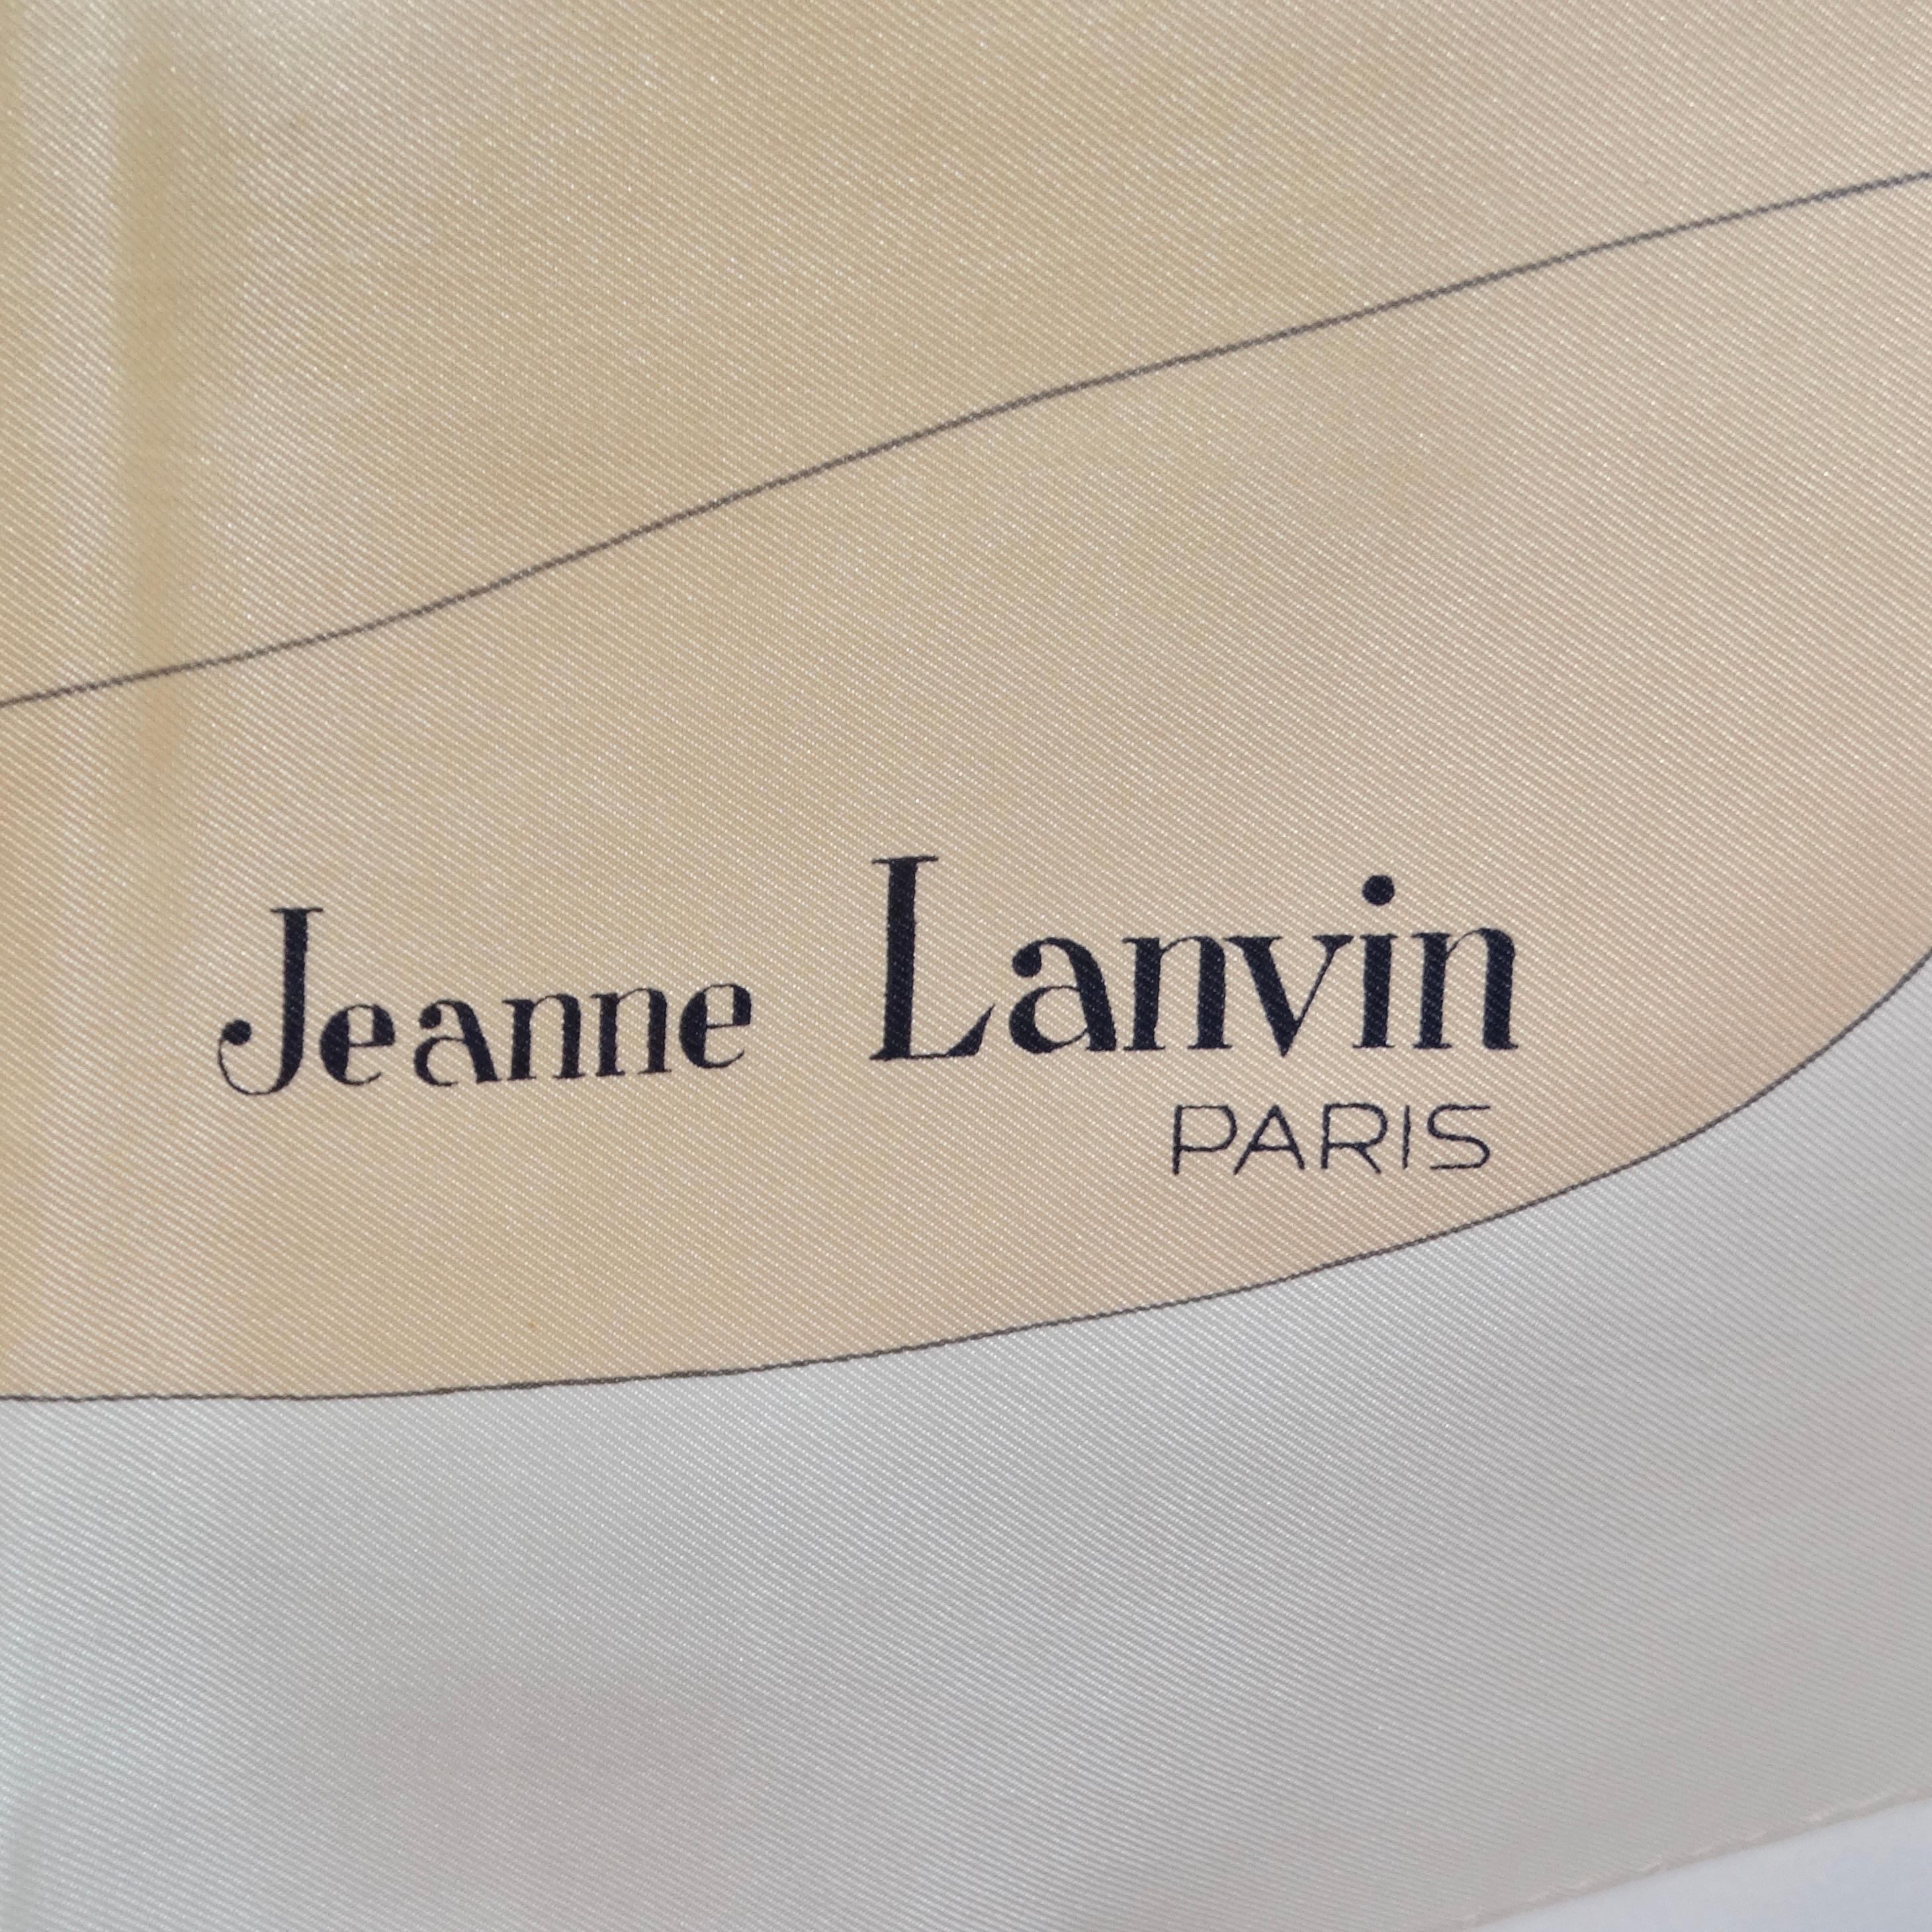 Voici le summum de l'élégance vintage : l'écharpe en soie florale Lanvin des années 1970. Réalisé avec une attention méticuleuse aux détails, ce foulard témoigne de l'héritage intemporel de Lanvin en matière de design. Des tons neutres et de douces